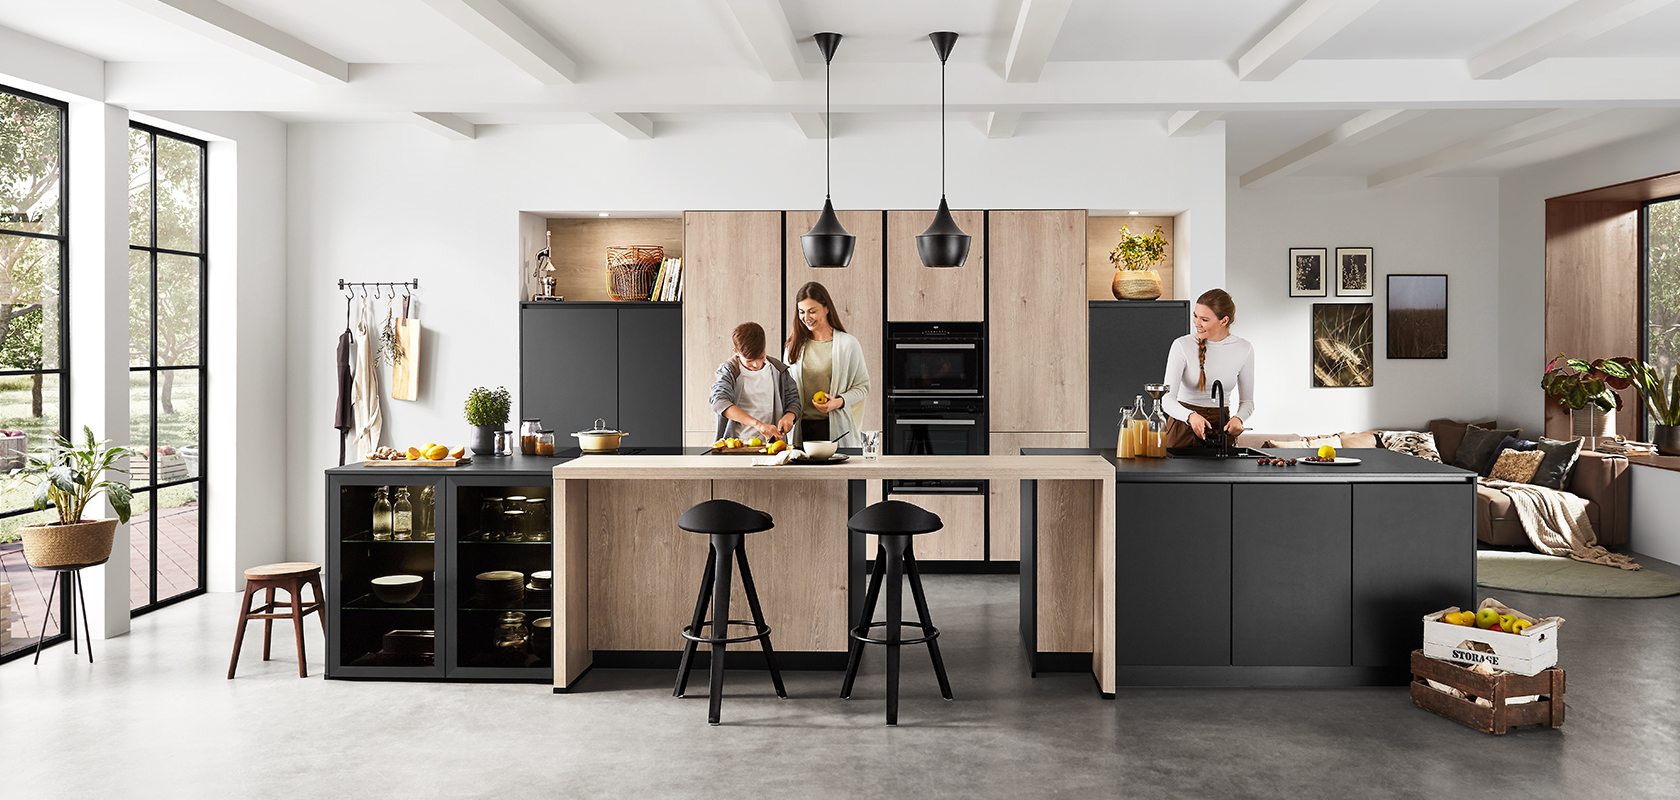 Nowoczesne wnętrze kuchni z przestronnym, czystym designem, na którym dwie osoby gotują i rozmawiają, podkreślając funkcjonalność i współczesny styl.